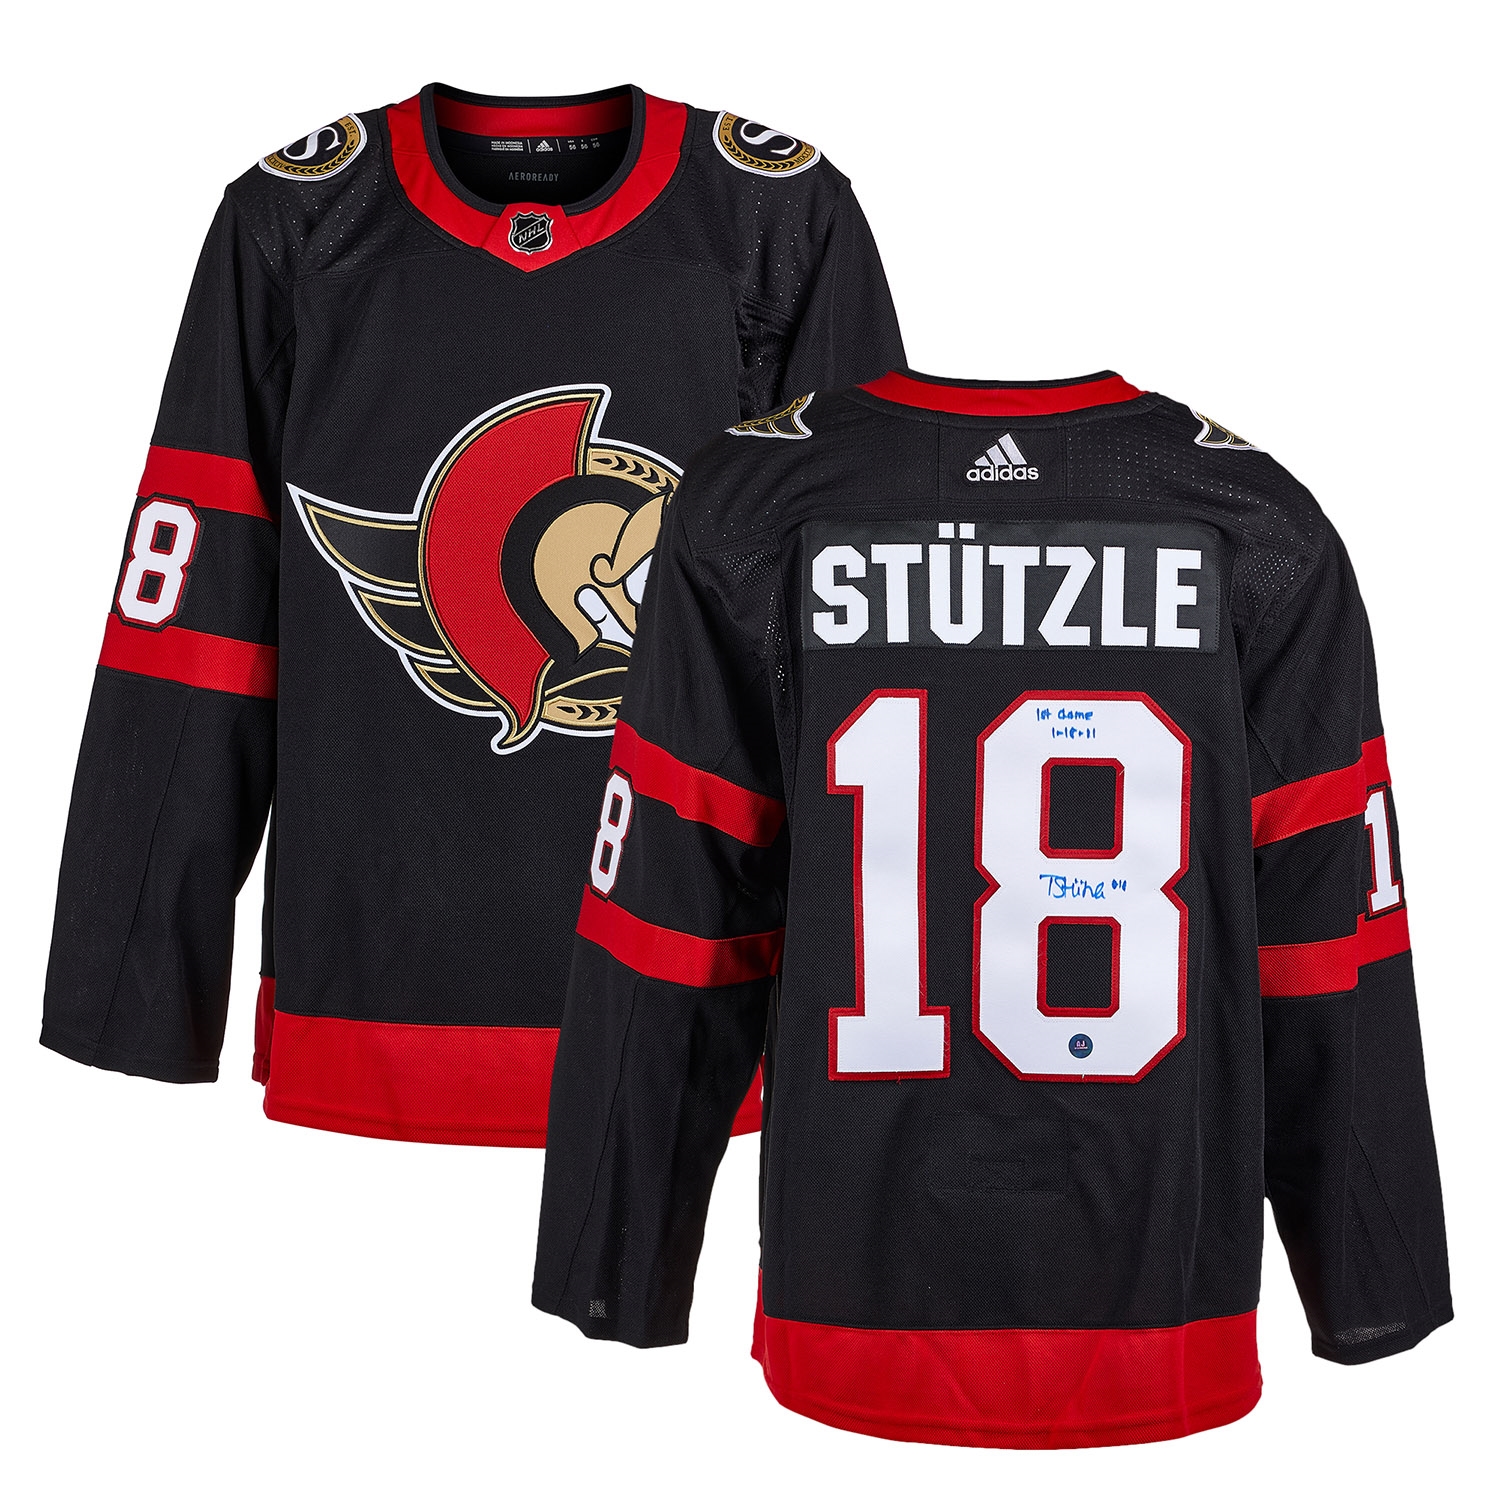 Tim Stutzle Ottawa Senators Signed & Dated 1st Game adidas Jersey